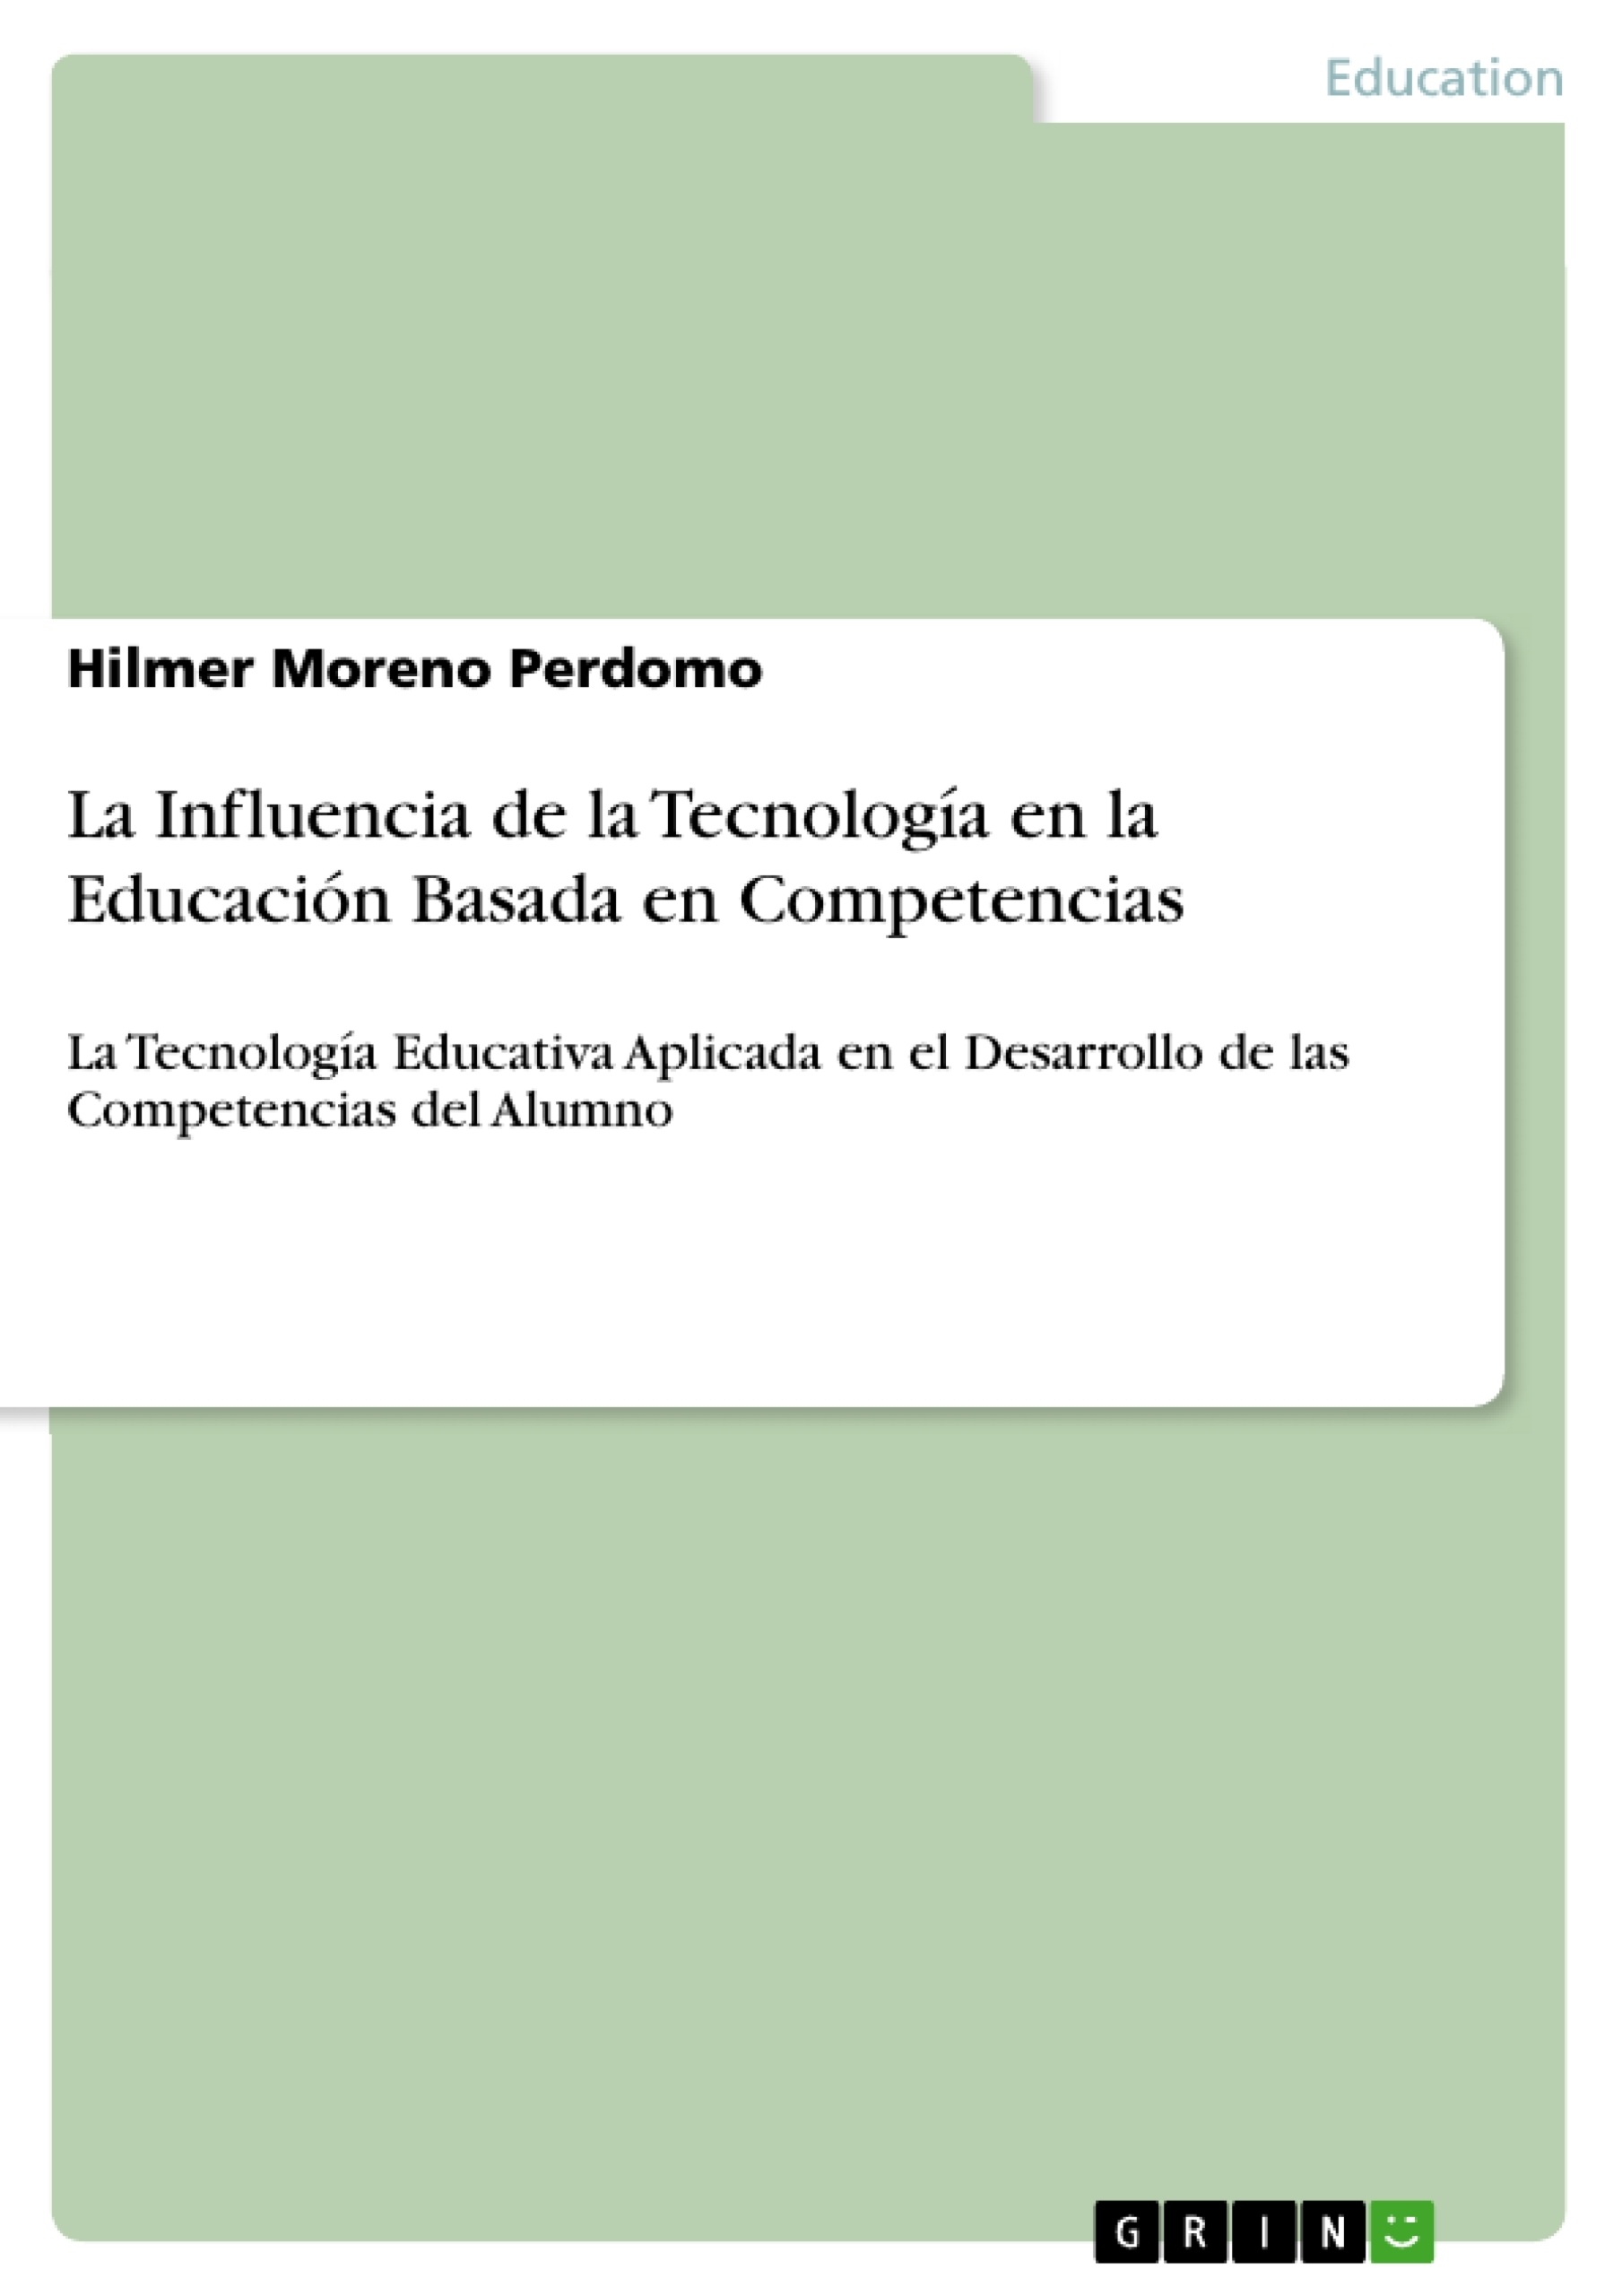 Titre: La Influencia de la Tecnología en la Educación Basada en Competencias